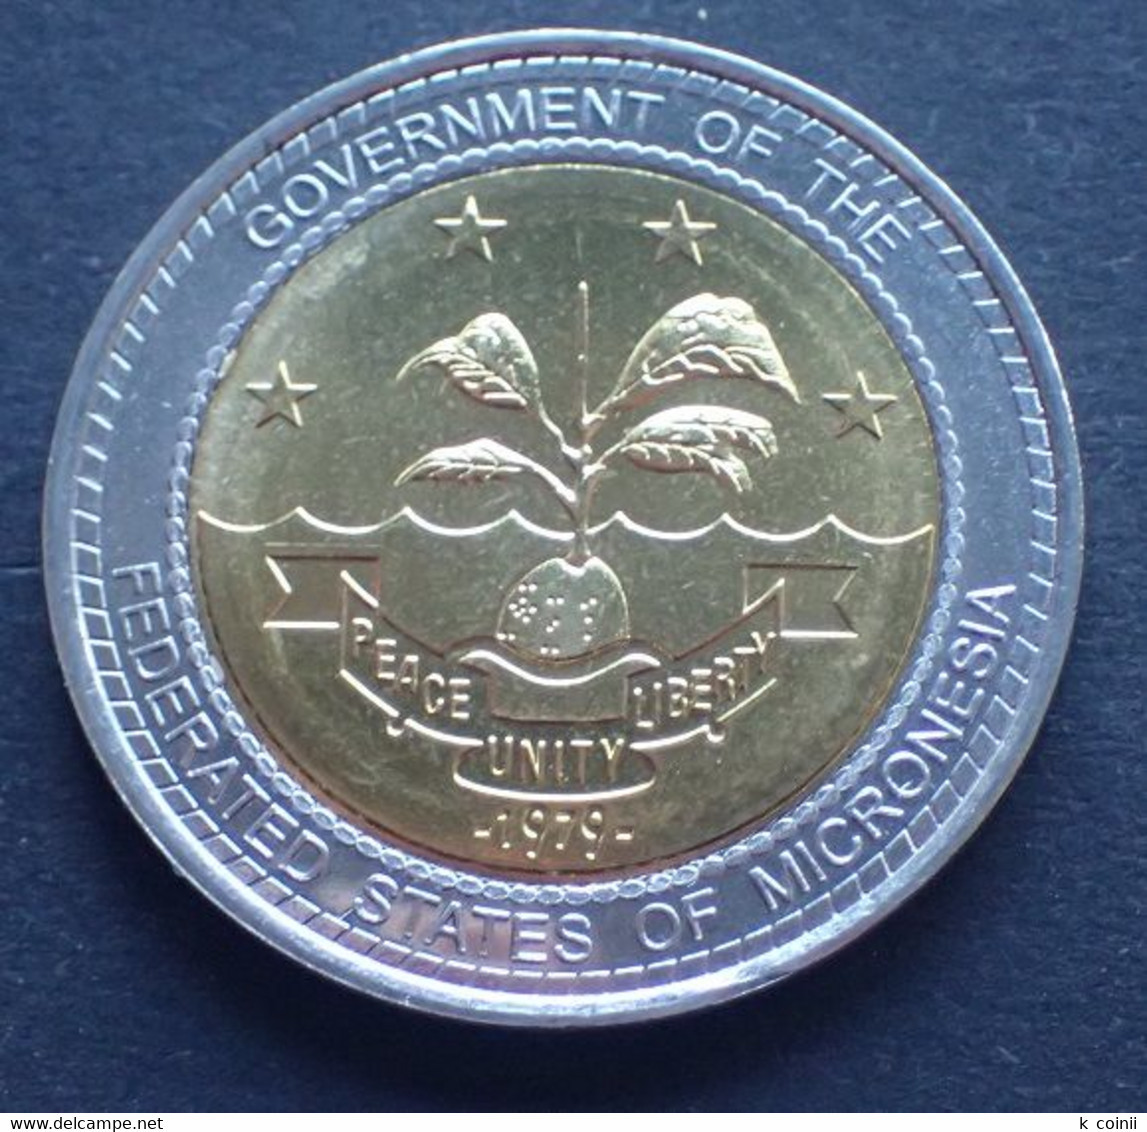 Micronesia 1 Dollar 2014 Bimetallic - Micronesia